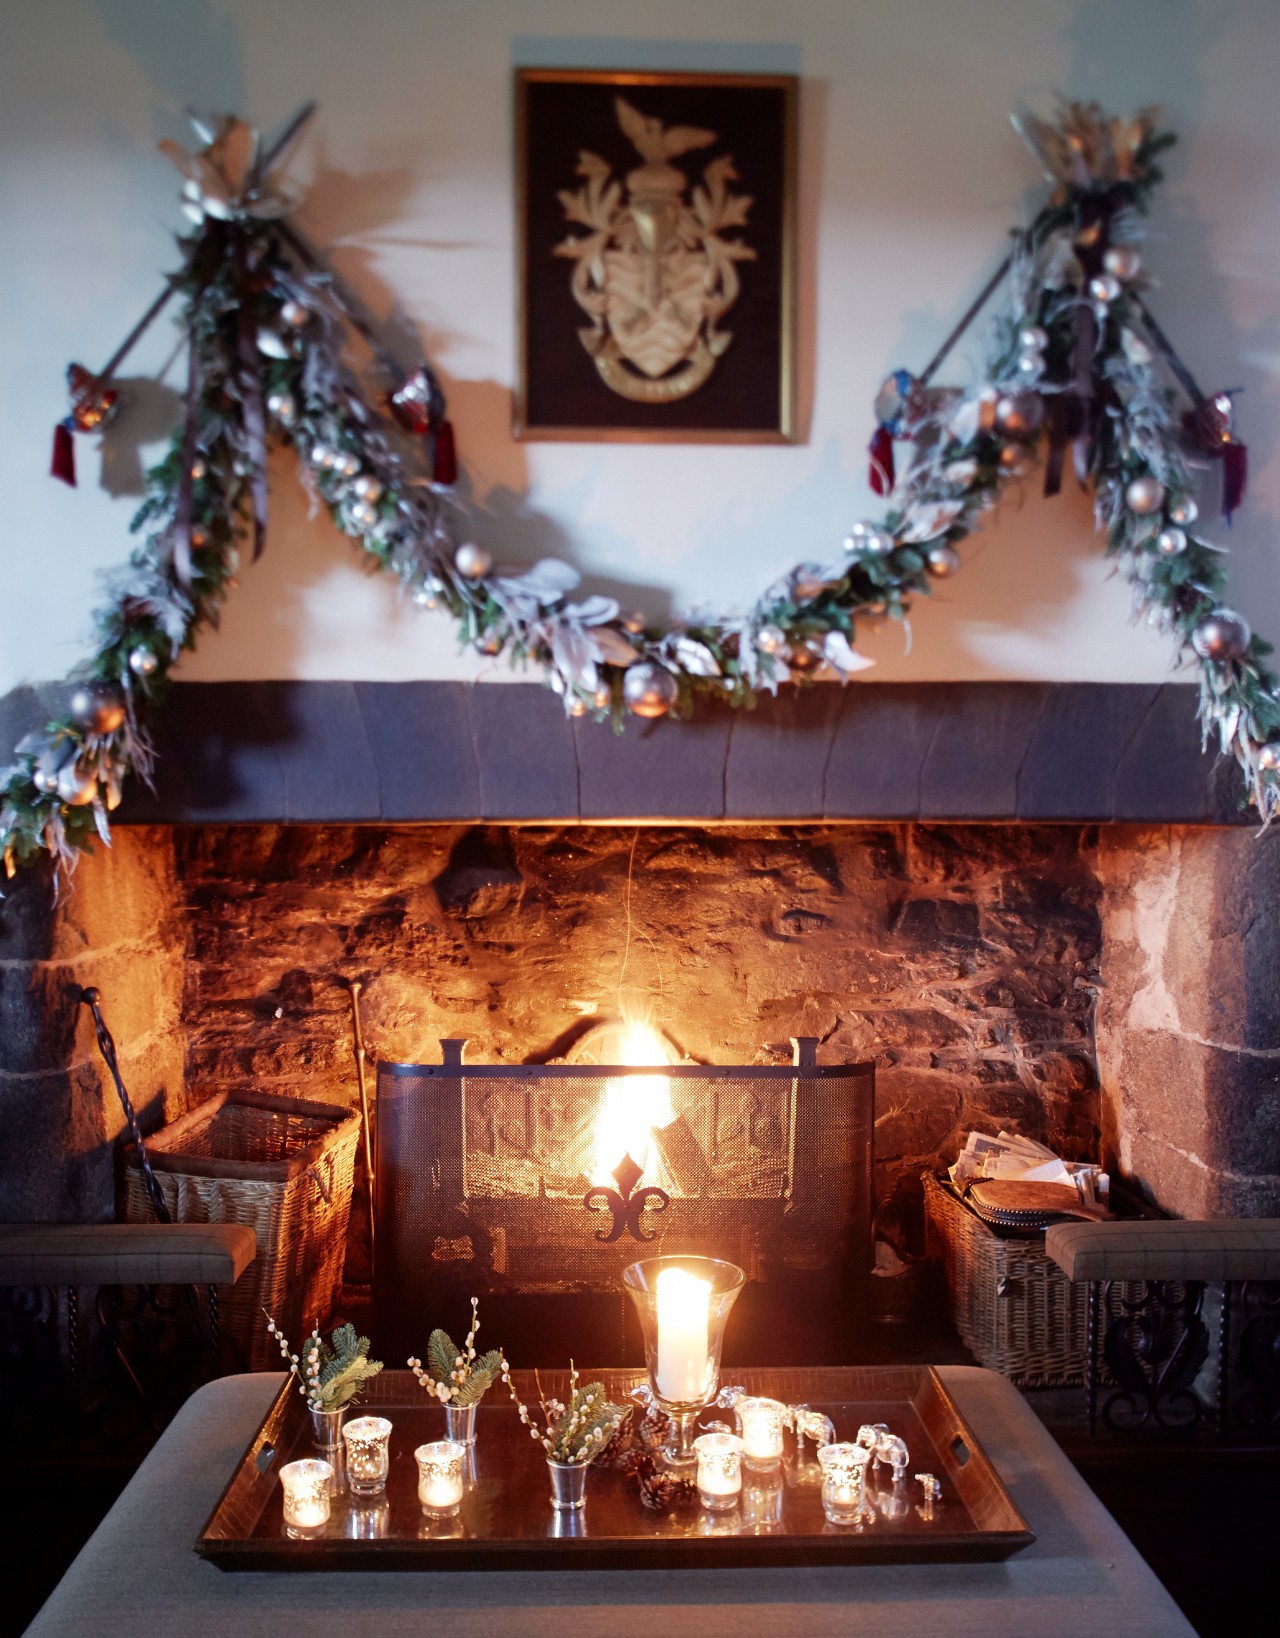 蘇格蘭高地;聖誕節;耶誕節;弗特城堡;Katharine Pooley;英國;瓷器